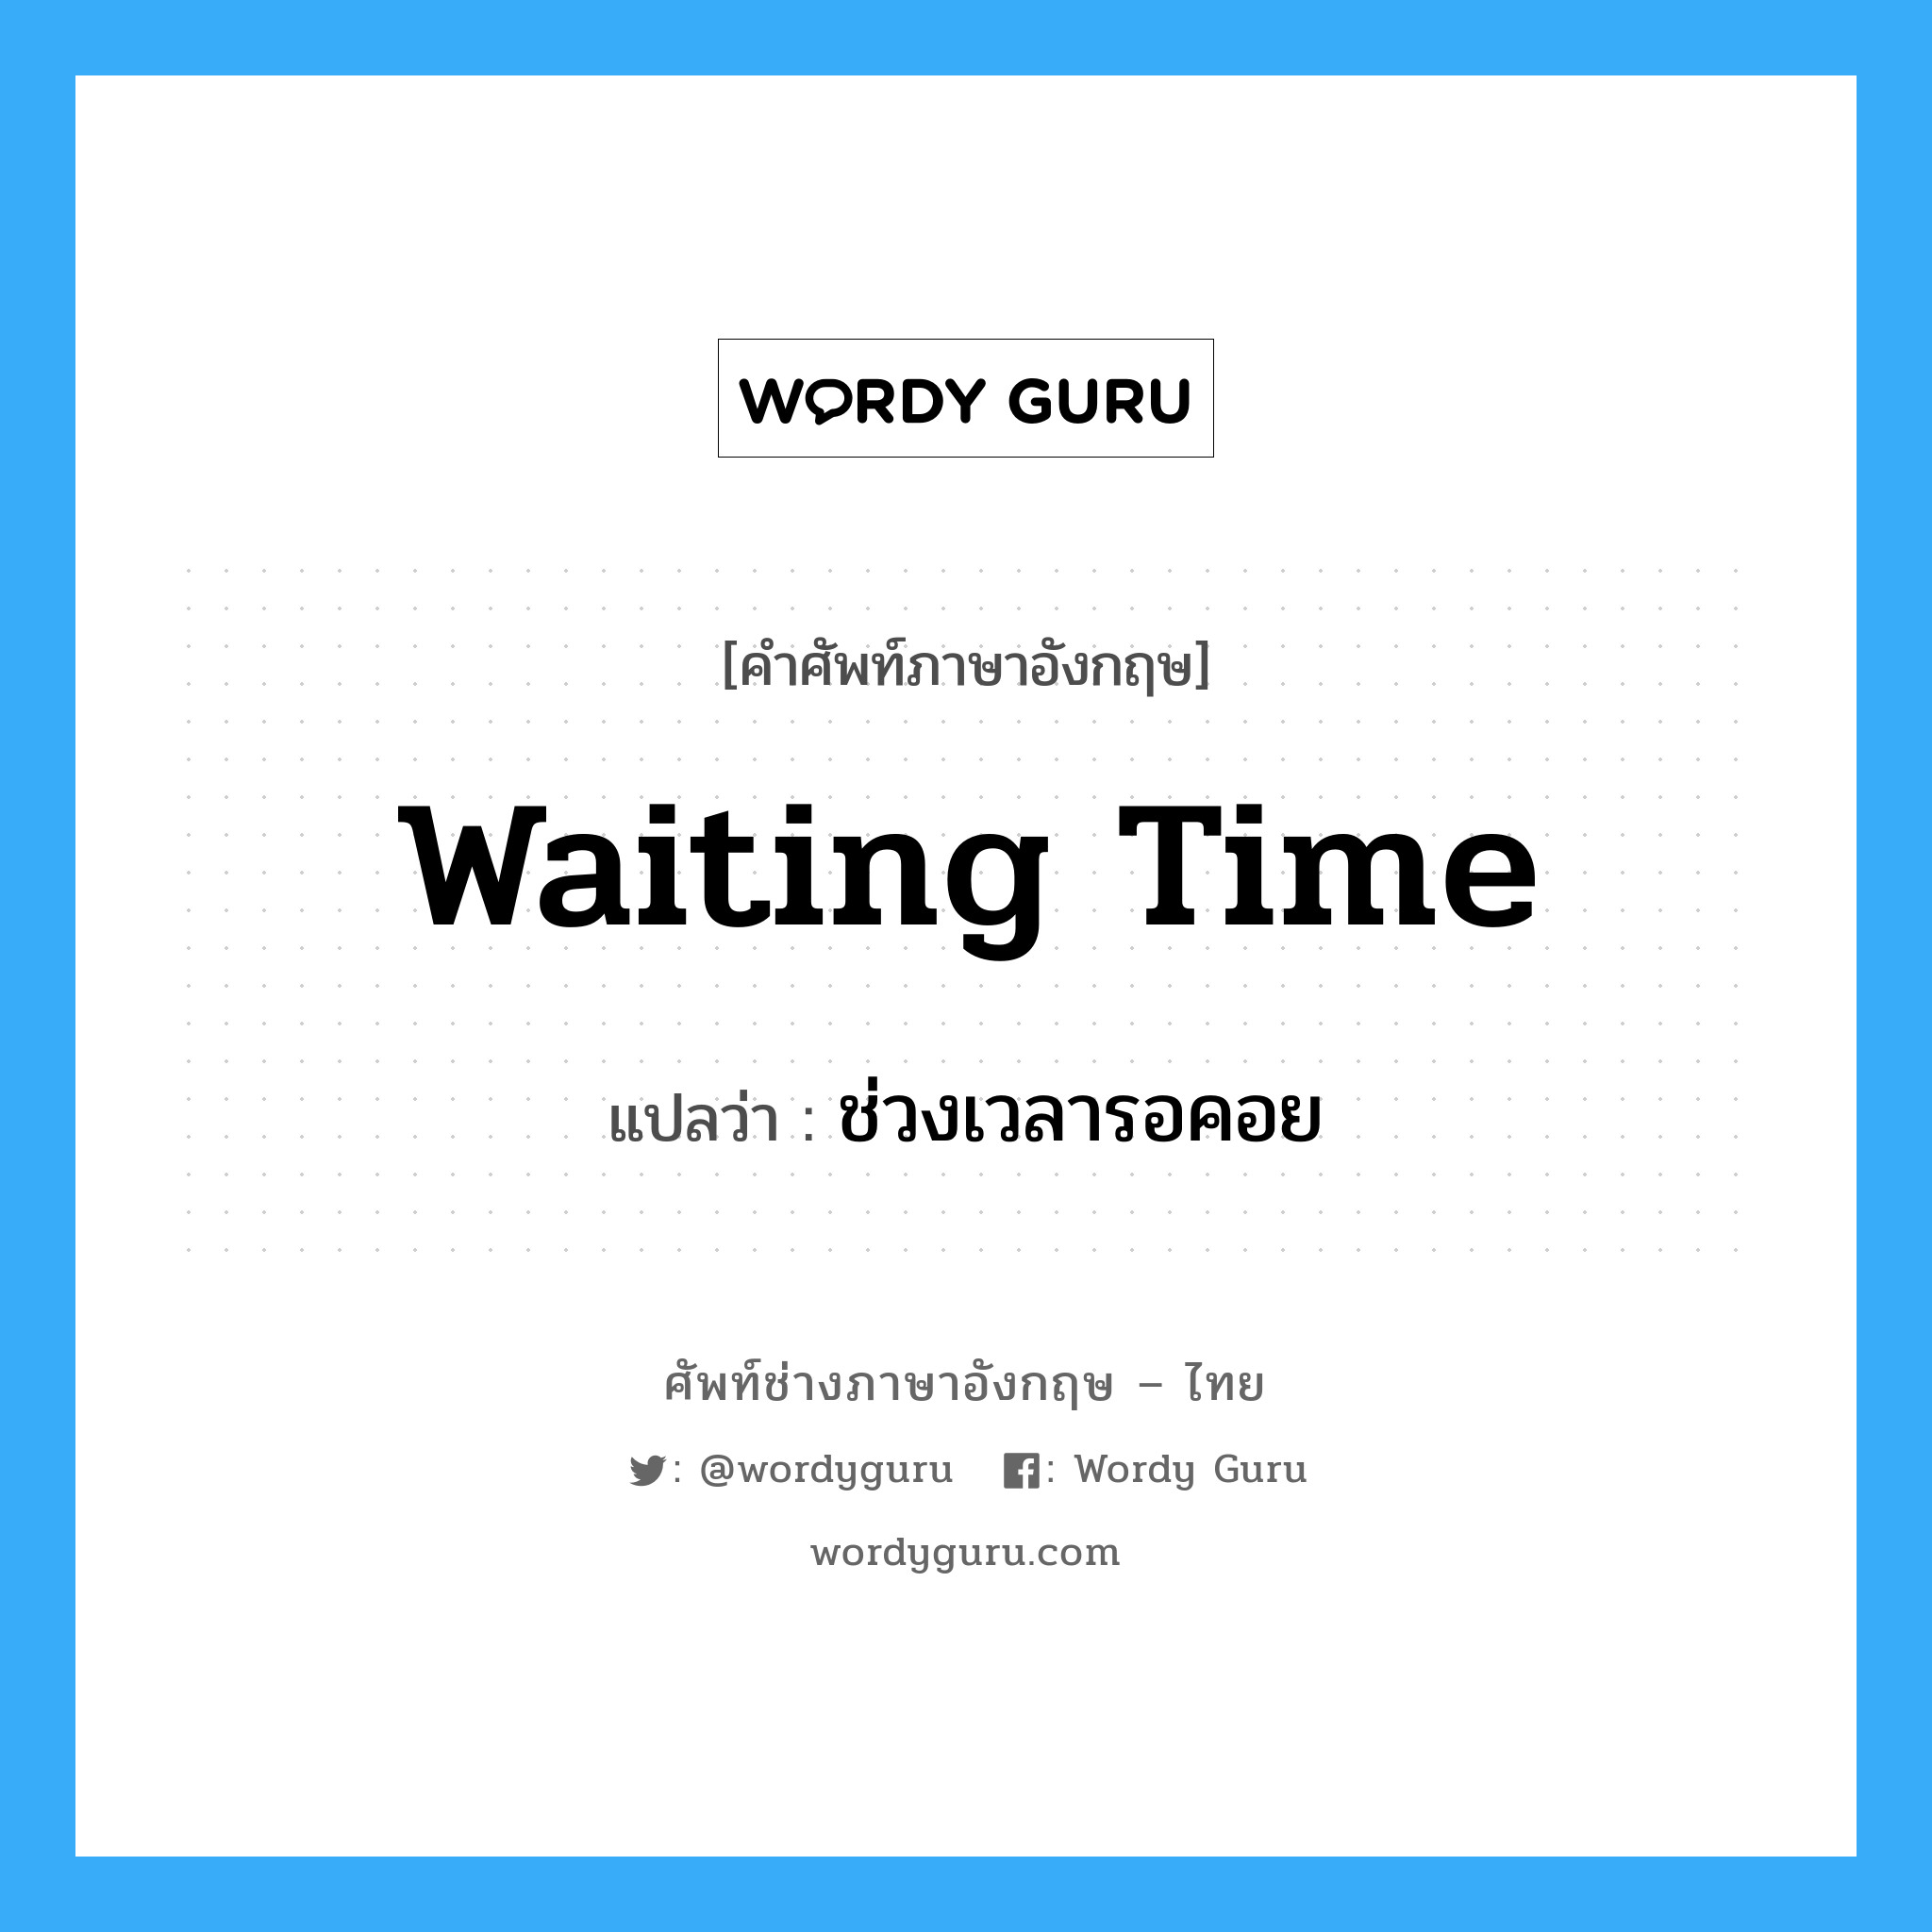 ช่วงเวลารอคอย ภาษาอังกฤษ?, คำศัพท์ช่างภาษาอังกฤษ - ไทย ช่วงเวลารอคอย คำศัพท์ภาษาอังกฤษ ช่วงเวลารอคอย แปลว่า Waiting Time